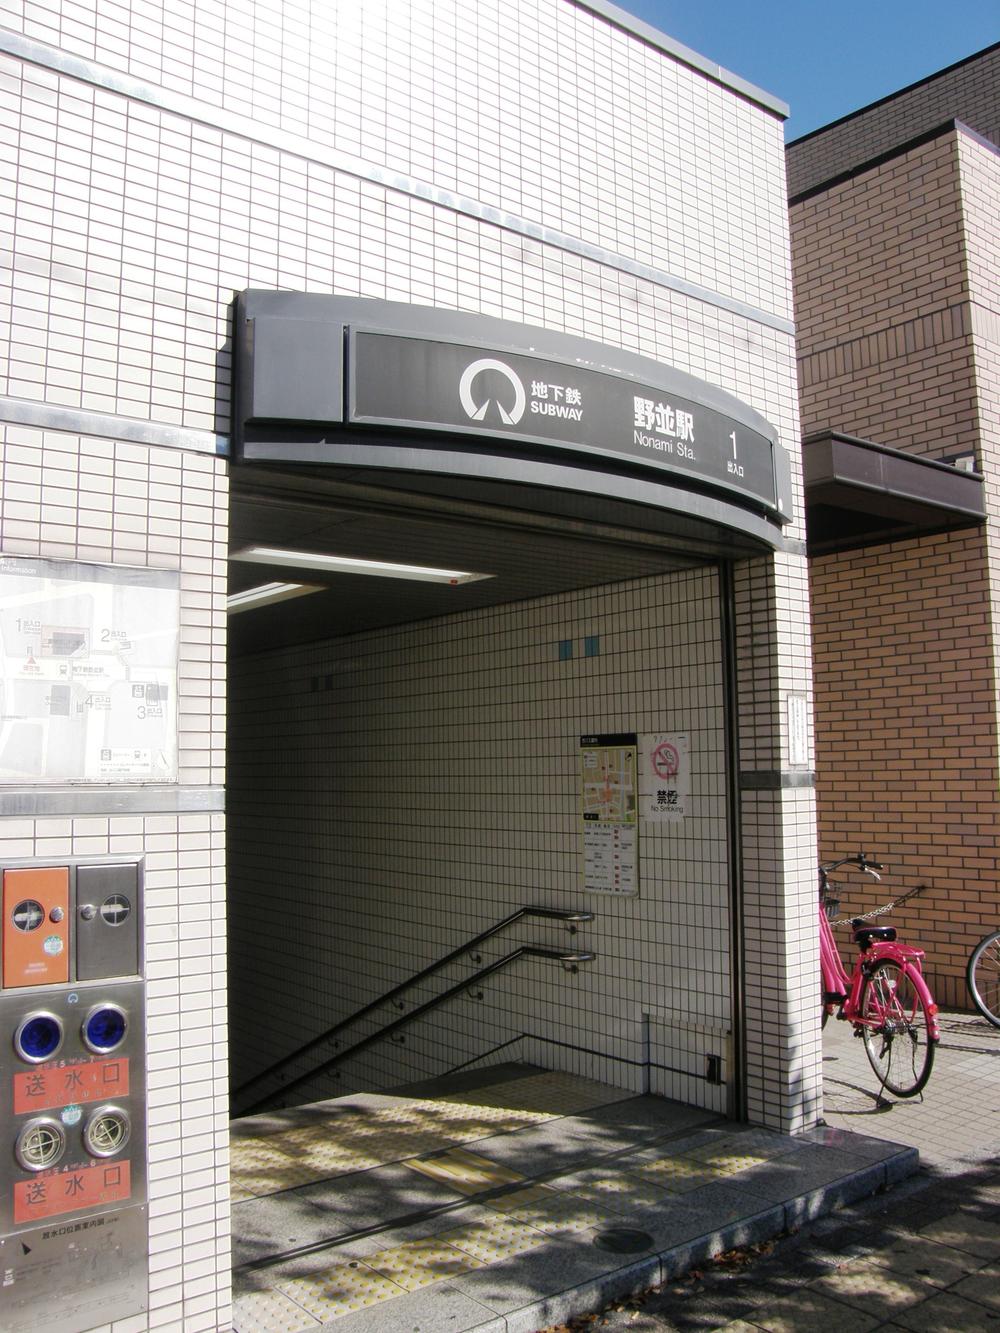 station. 930m Subway Sakura-dori Line "Nonami" station